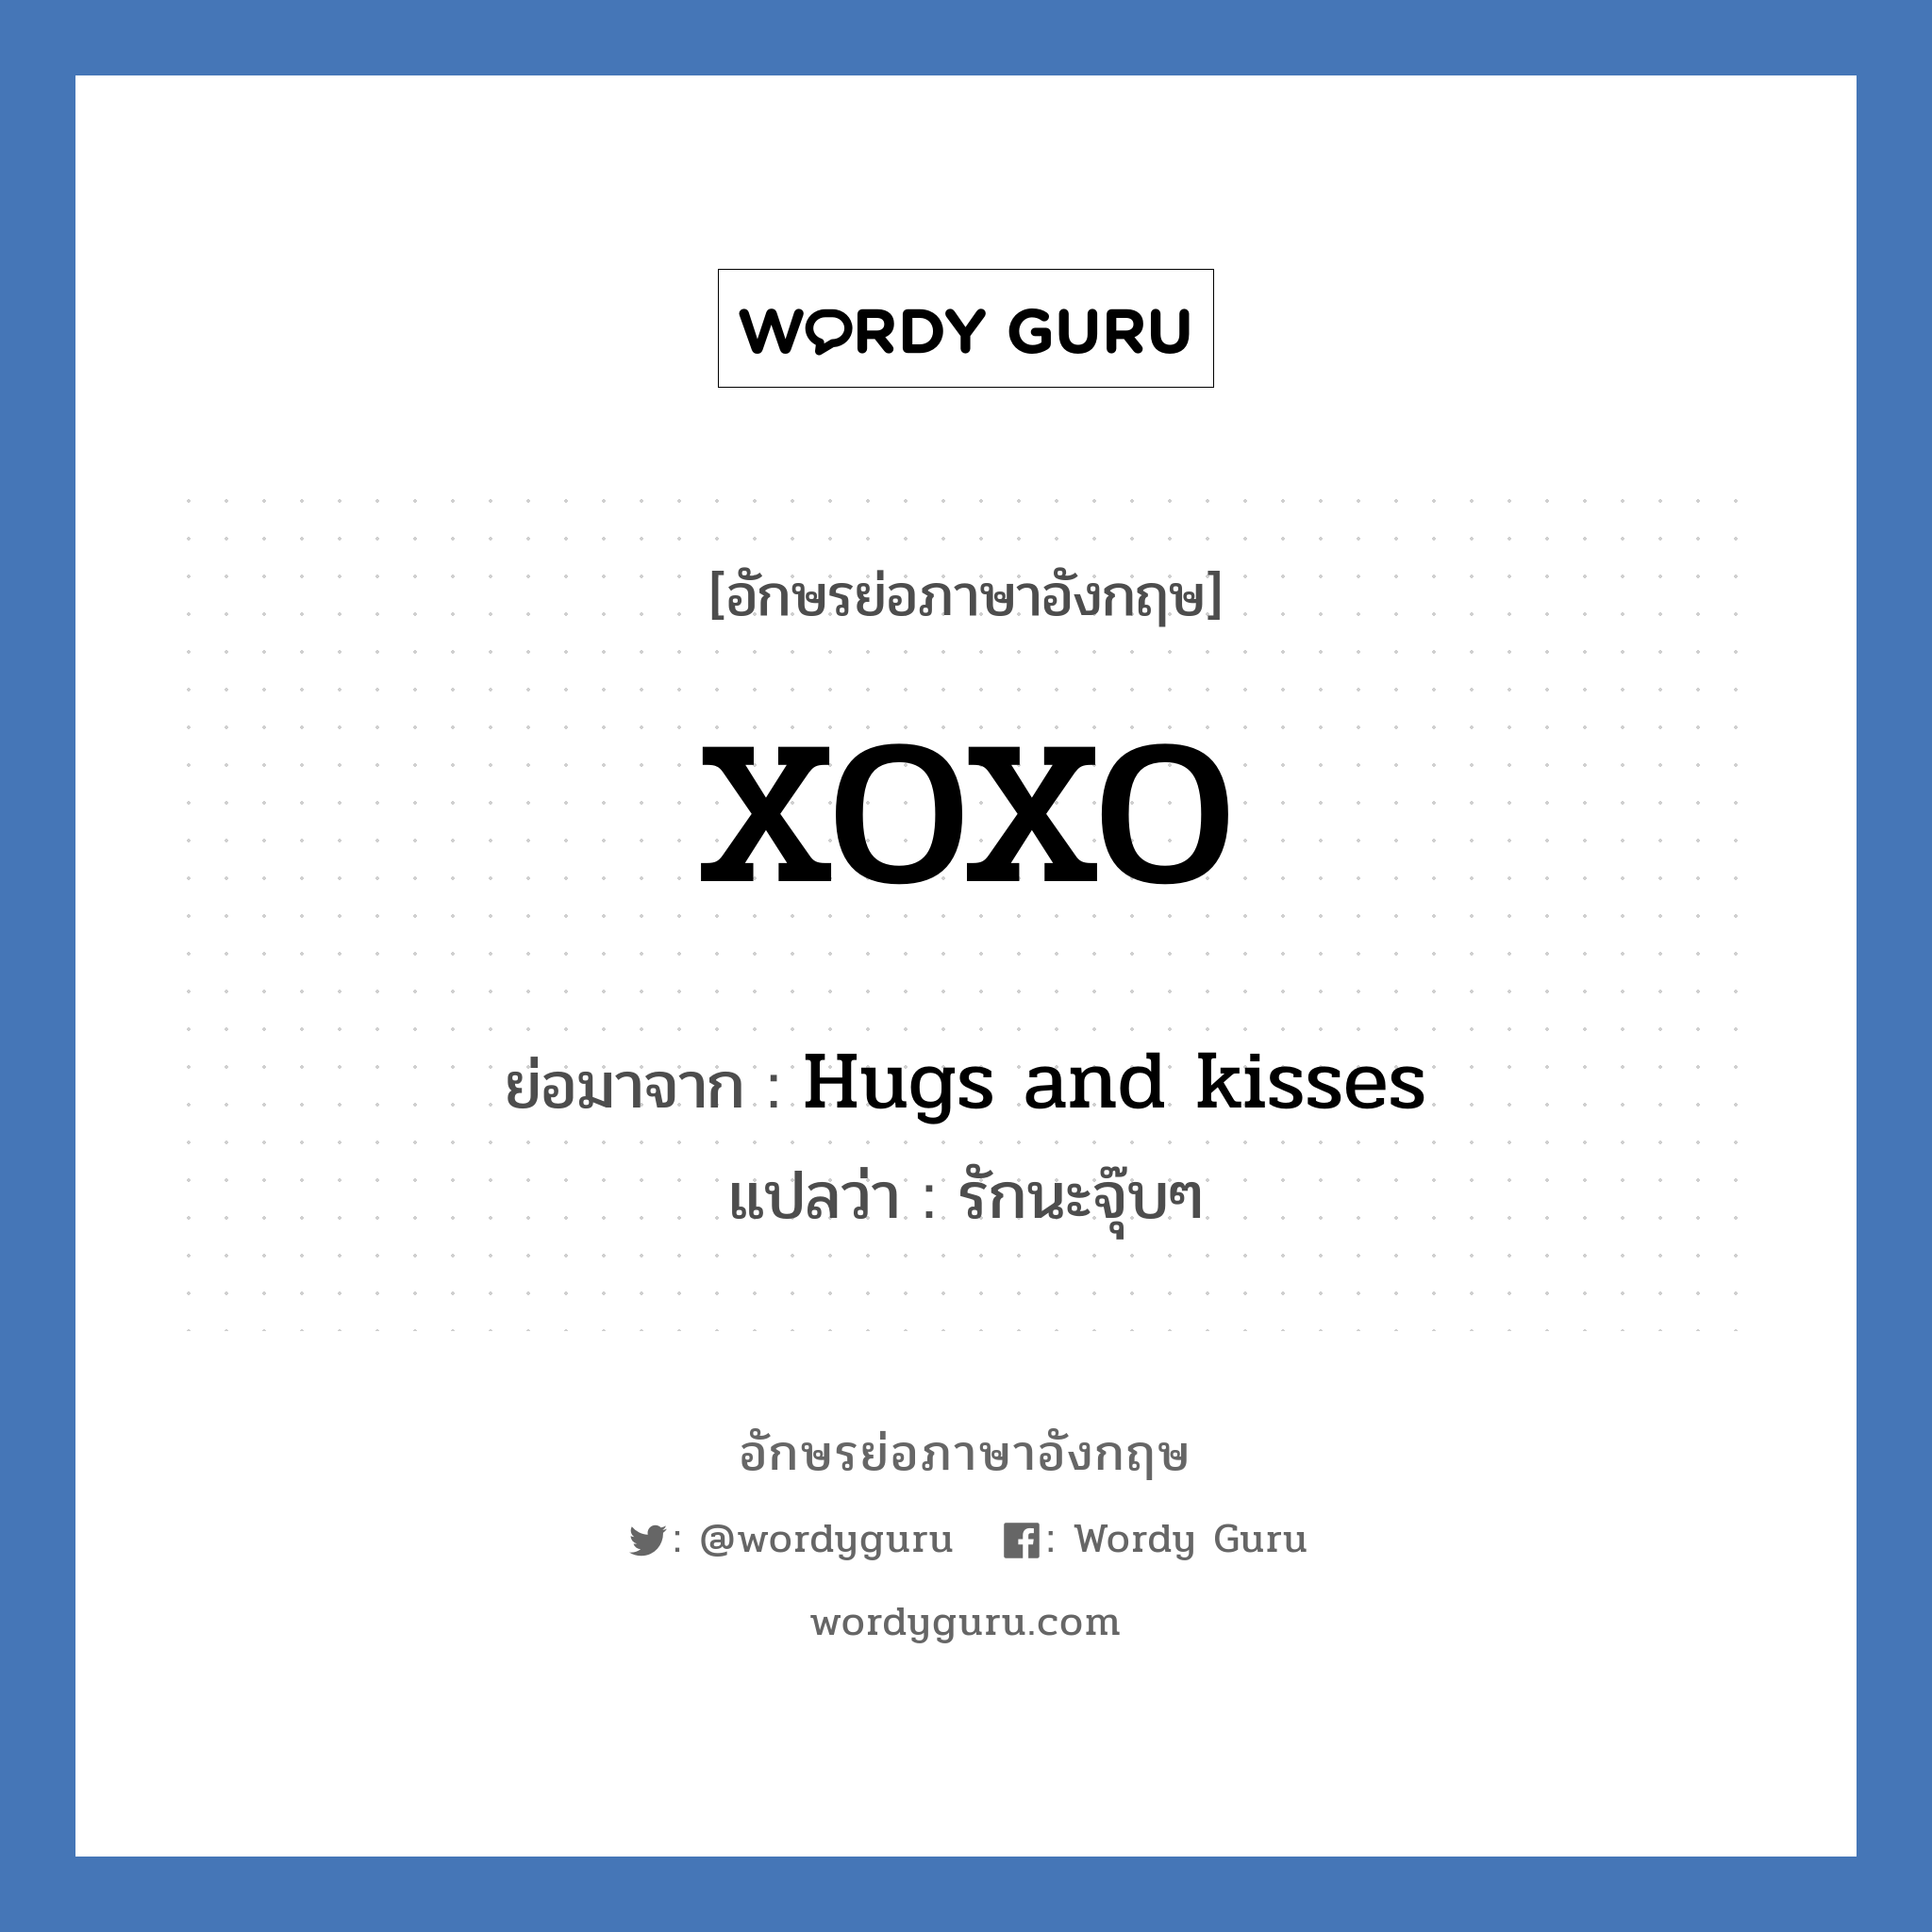 Hugs and kisses คำย่อคือ? แปลว่า?, อักษรย่อภาษาอังกฤษ Hugs and kisses ย่อมาจาก XOXO แปลว่า รักนะจุ๊บๆ